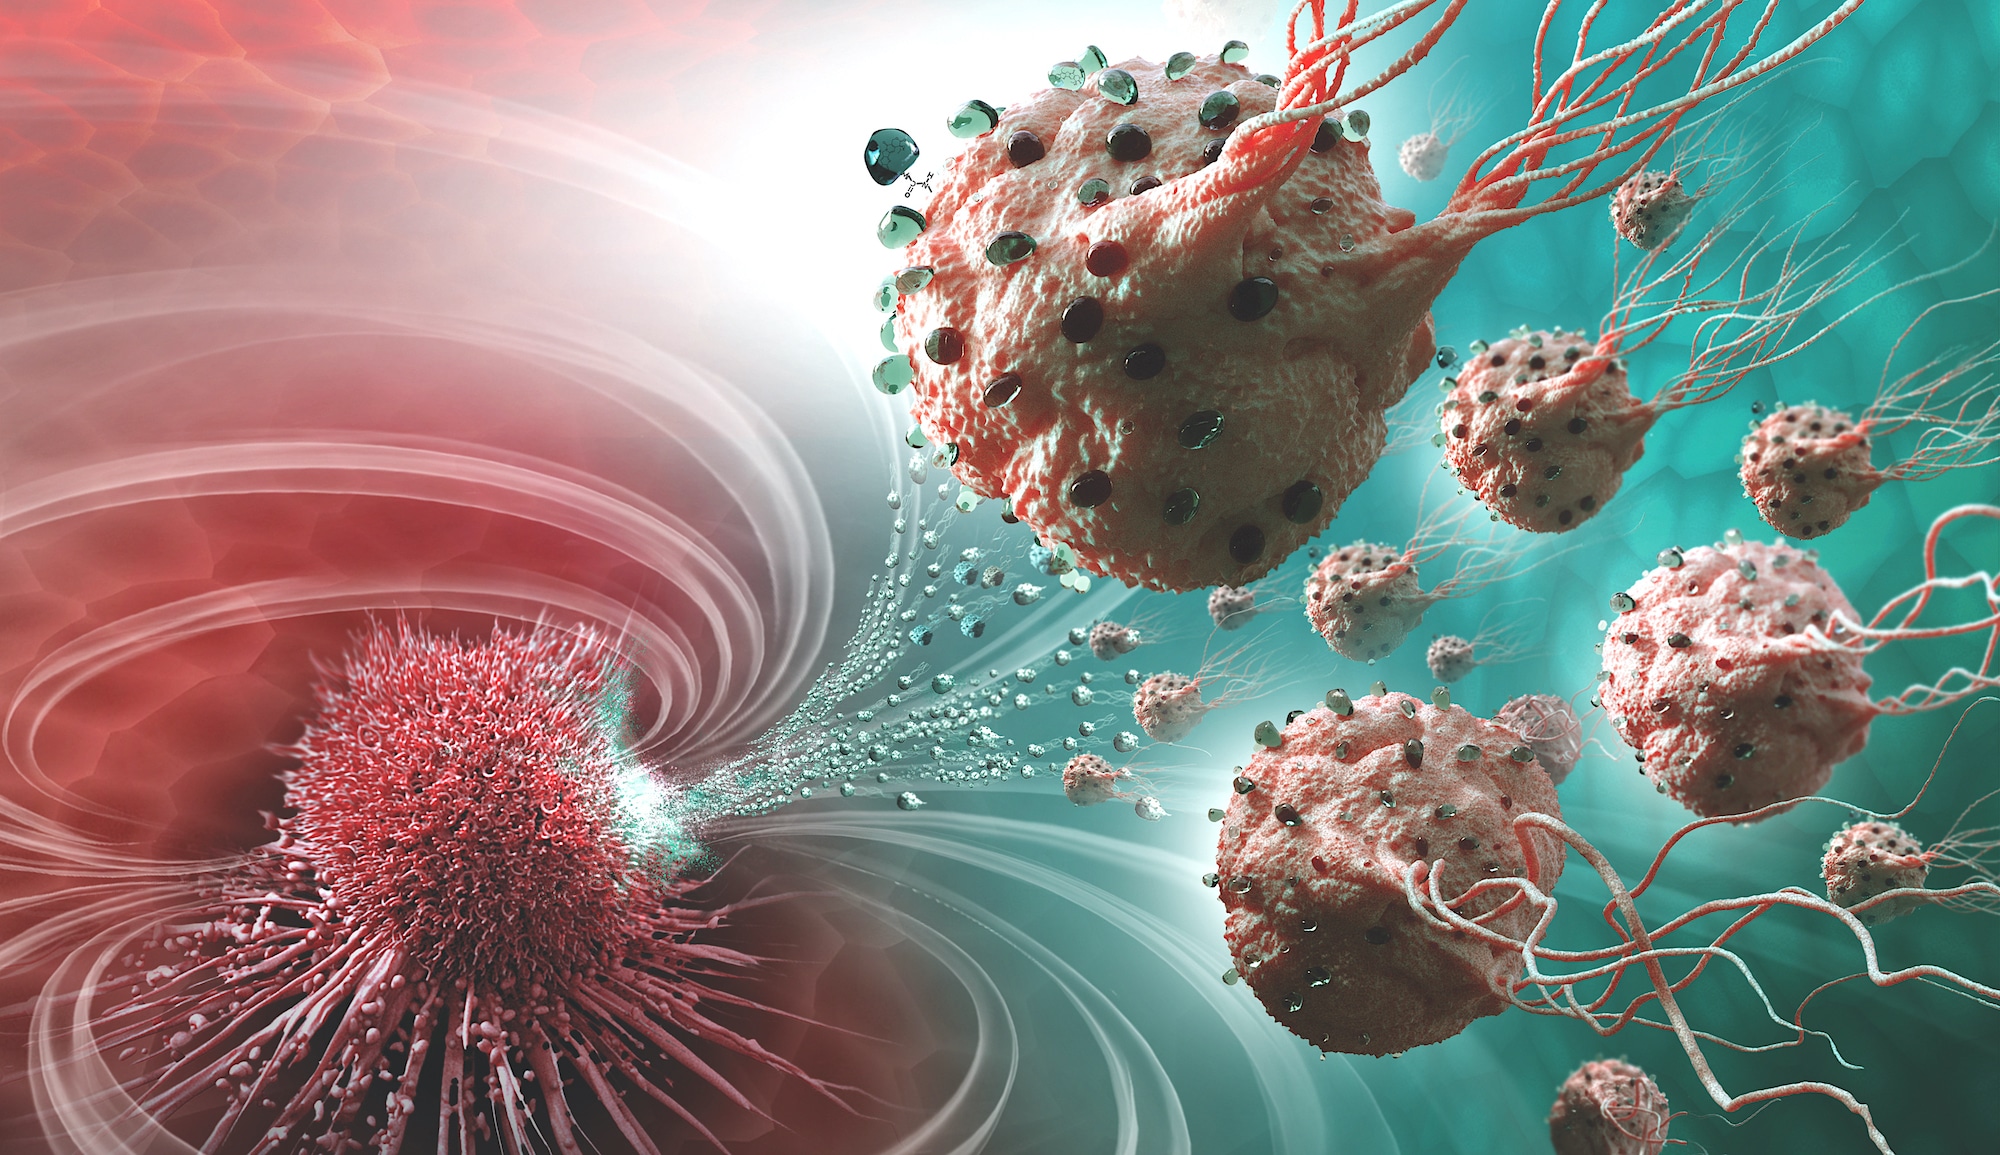 nanomachines detruire cellules cancereuses interieur couv 2